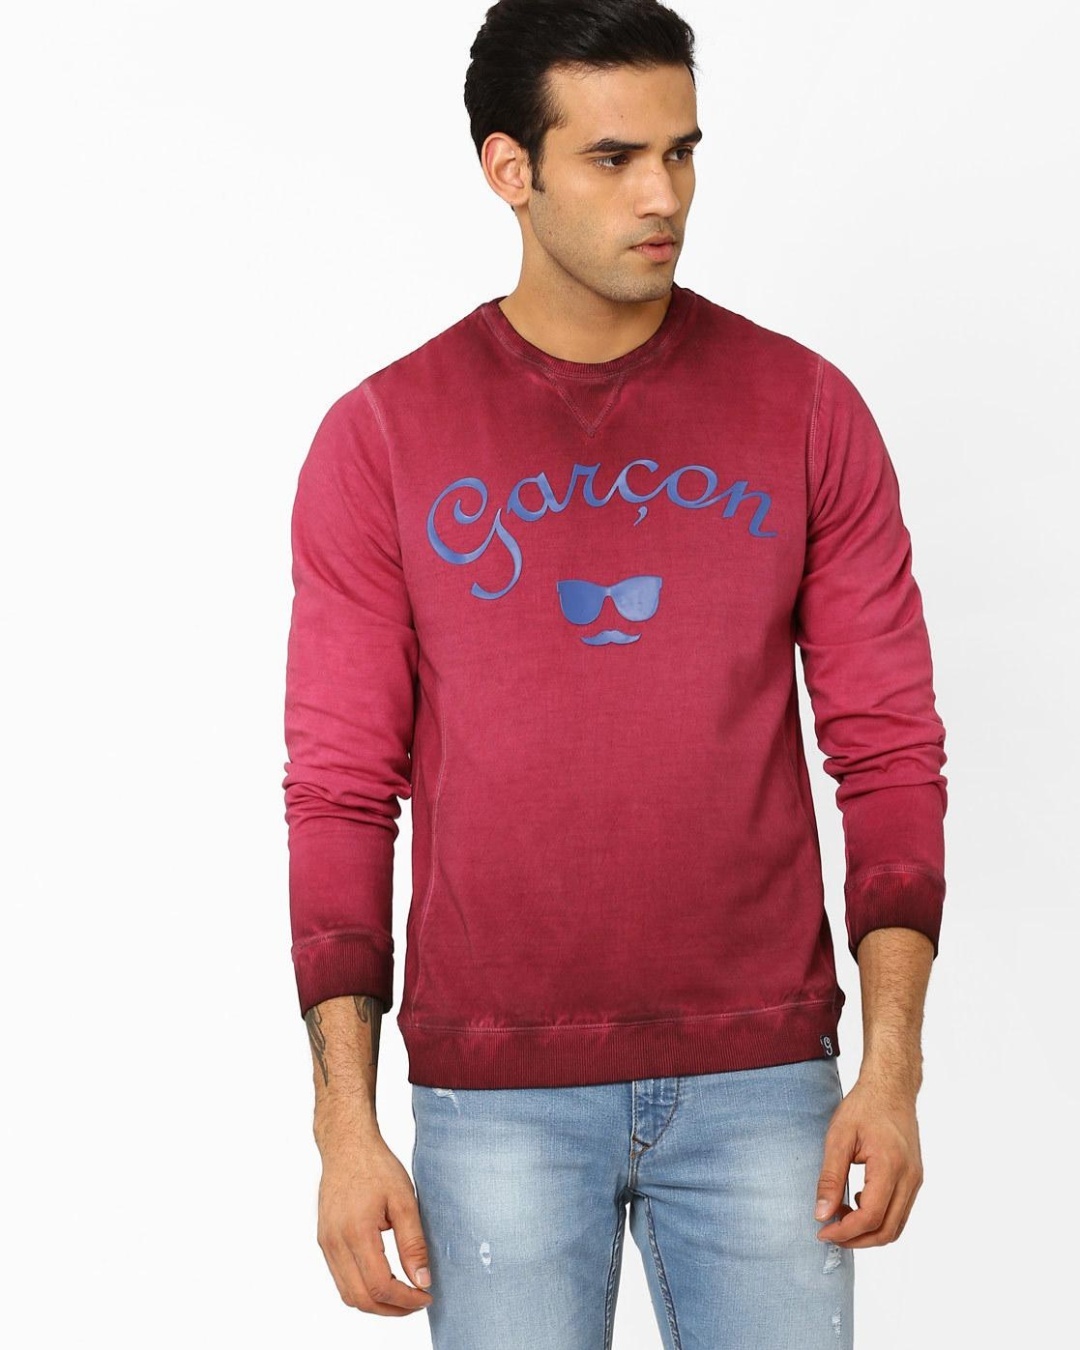 Buy Men's Maroon Typography Sweatshirt for Men Maroon Online at Bewakoof